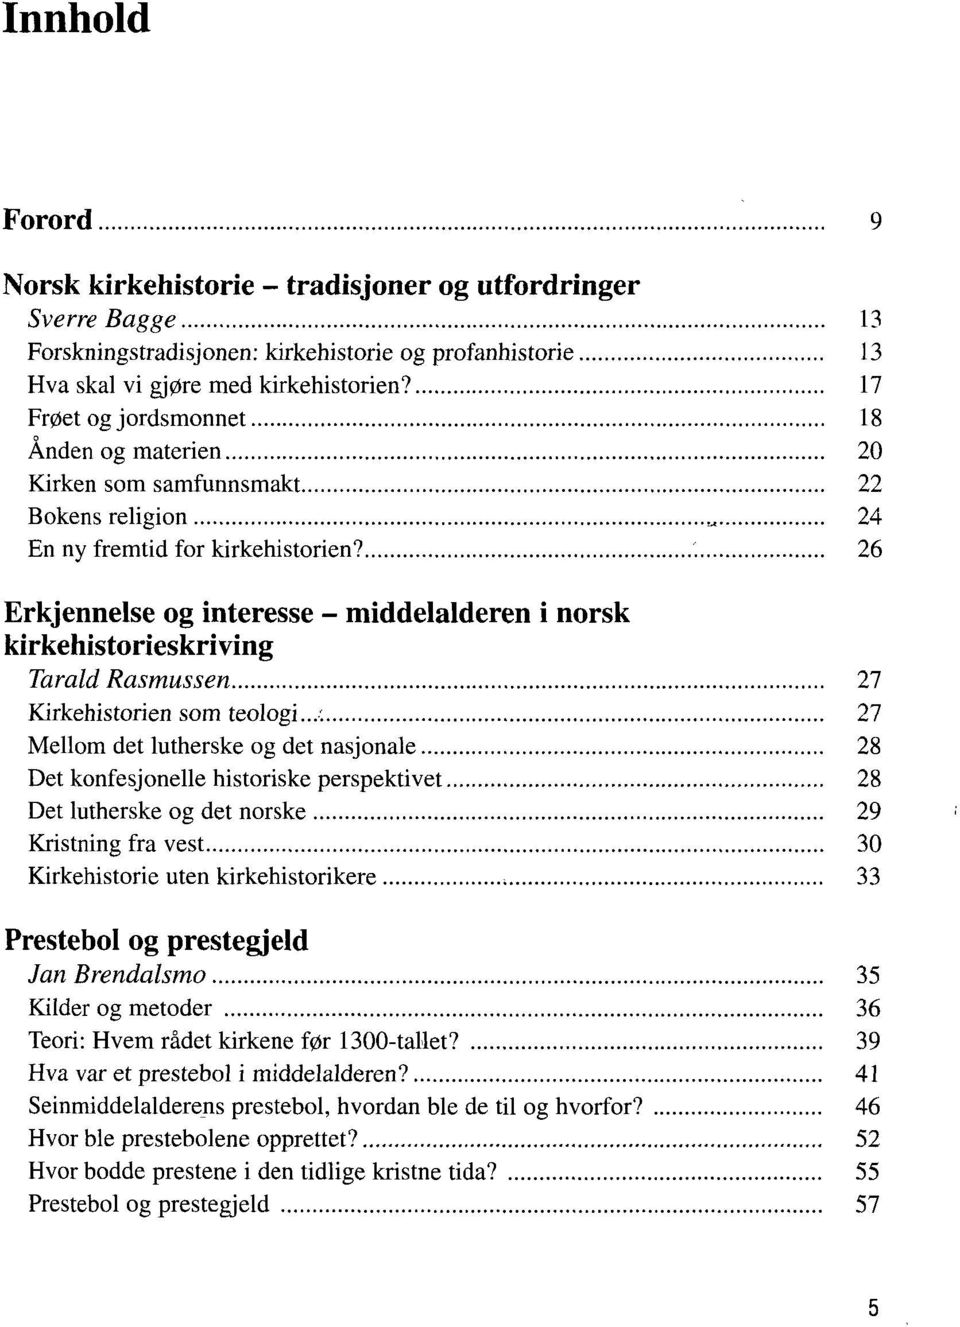 26 Erkjennelse og interesse - middelalderen i norsk kirkehistorieskriving Tarald Rasmussen 27 Kirkehistorien som teologi.